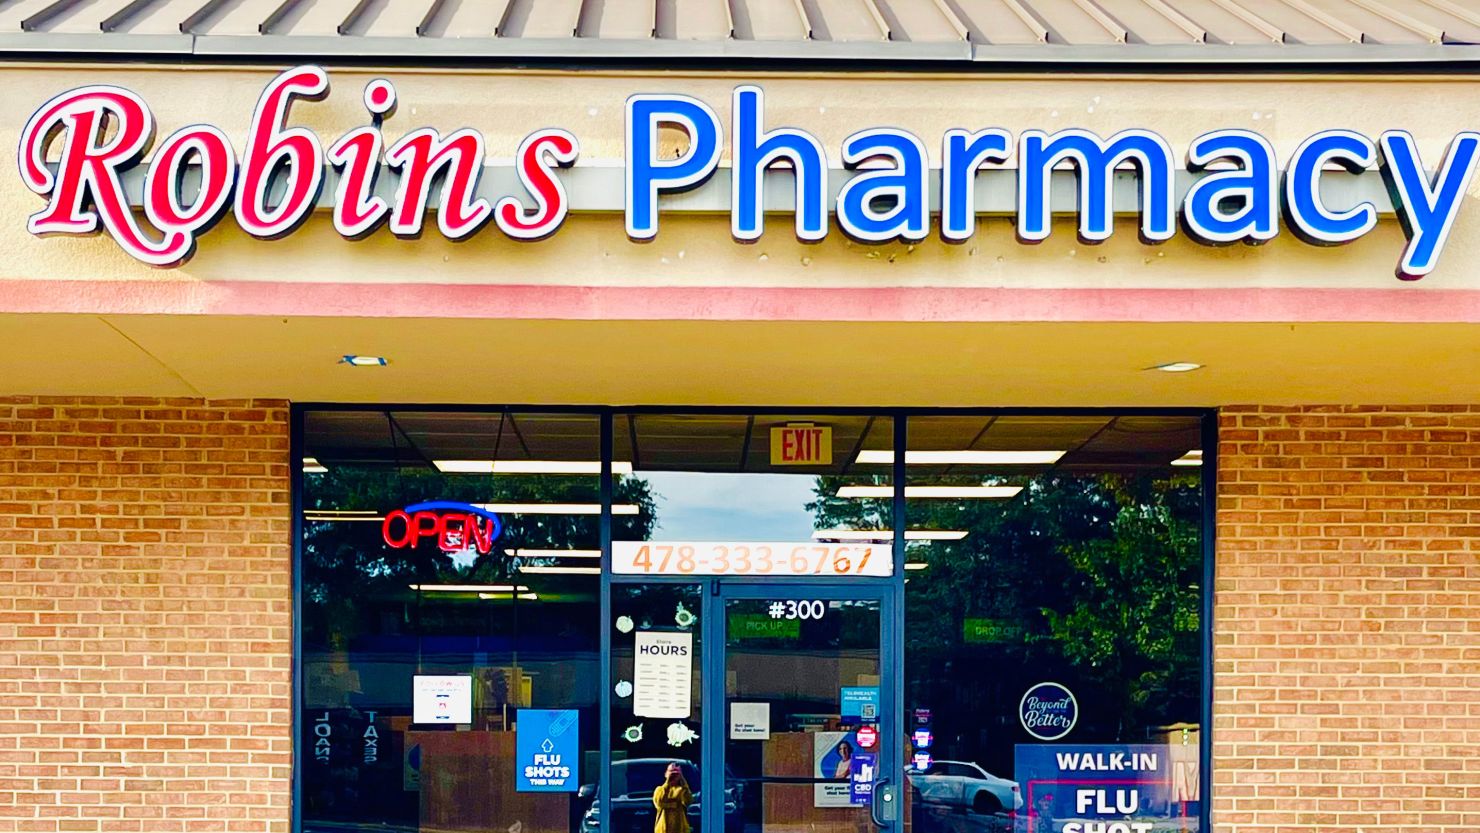 Ankit Patel's Robins Pharmacy in Warner Robins, Georgia.